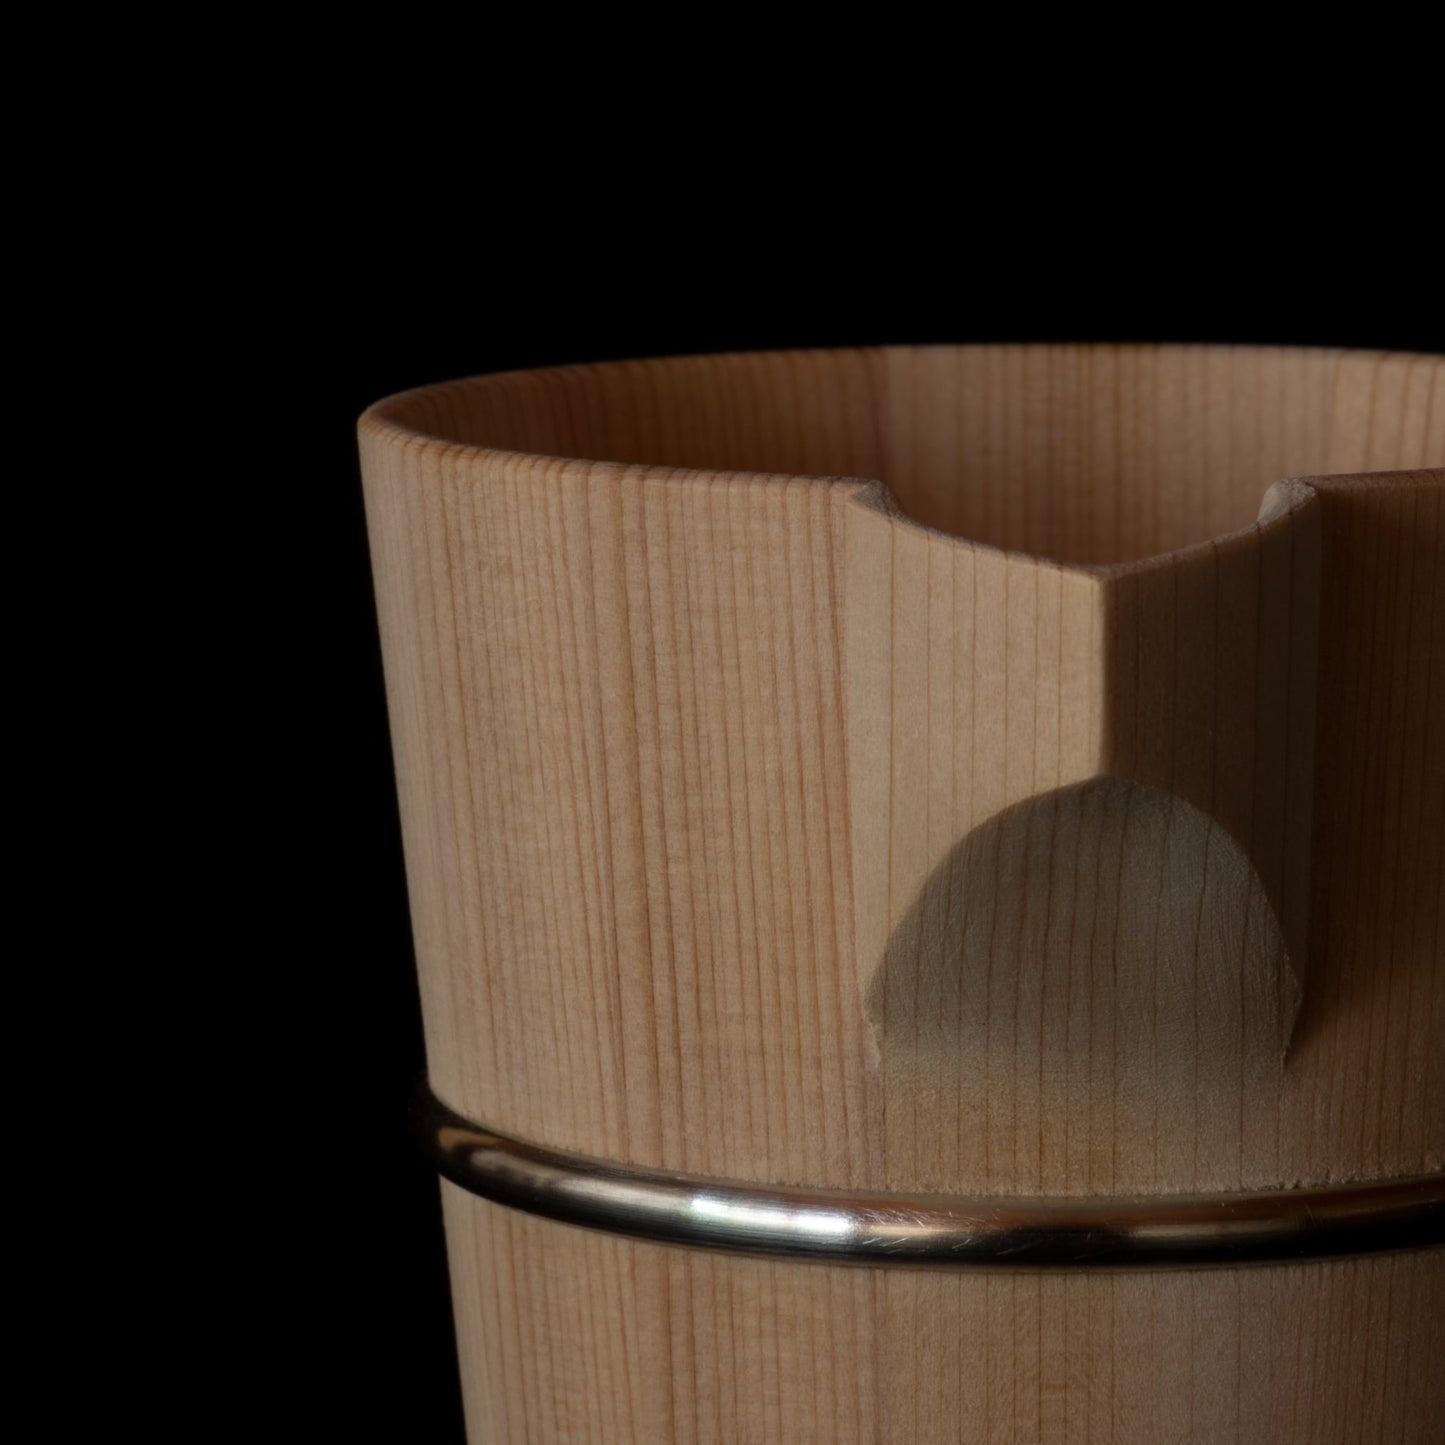 Detail of pouring spout of wooden Hinoki sake carafe